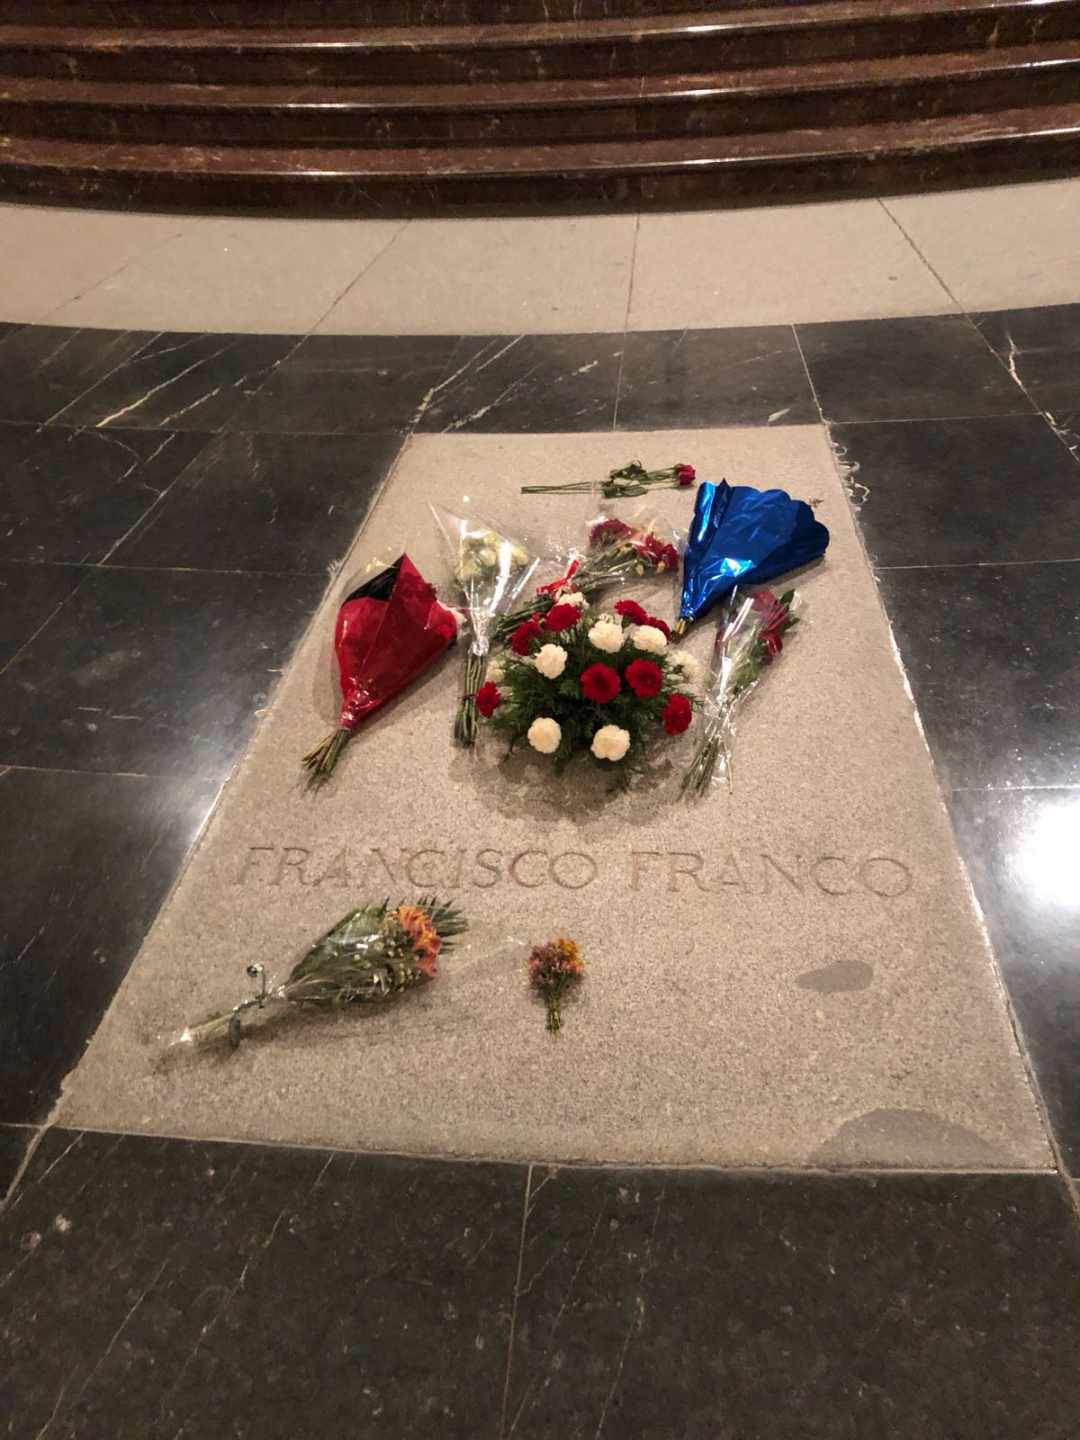 El Gobierno aprobará este viernes el decreto ley para exhumar a Franco